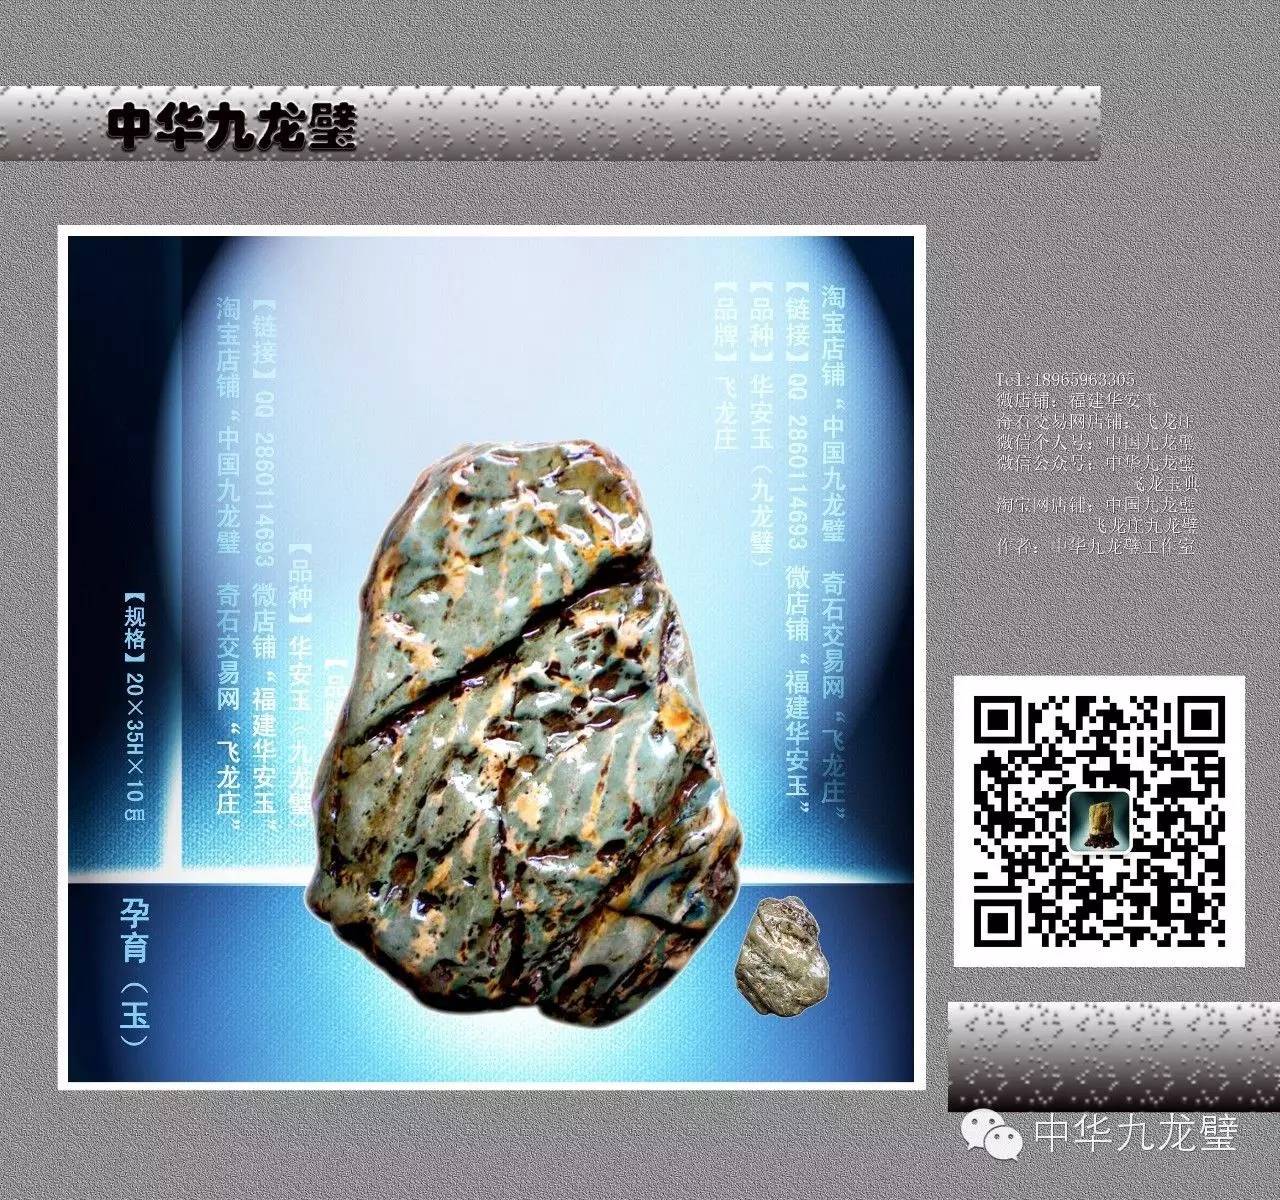 料峭寒冬中的洛阳奇石市场热闹了 图 - 华夏奇石网 - 洛阳市赏石协会官方网站